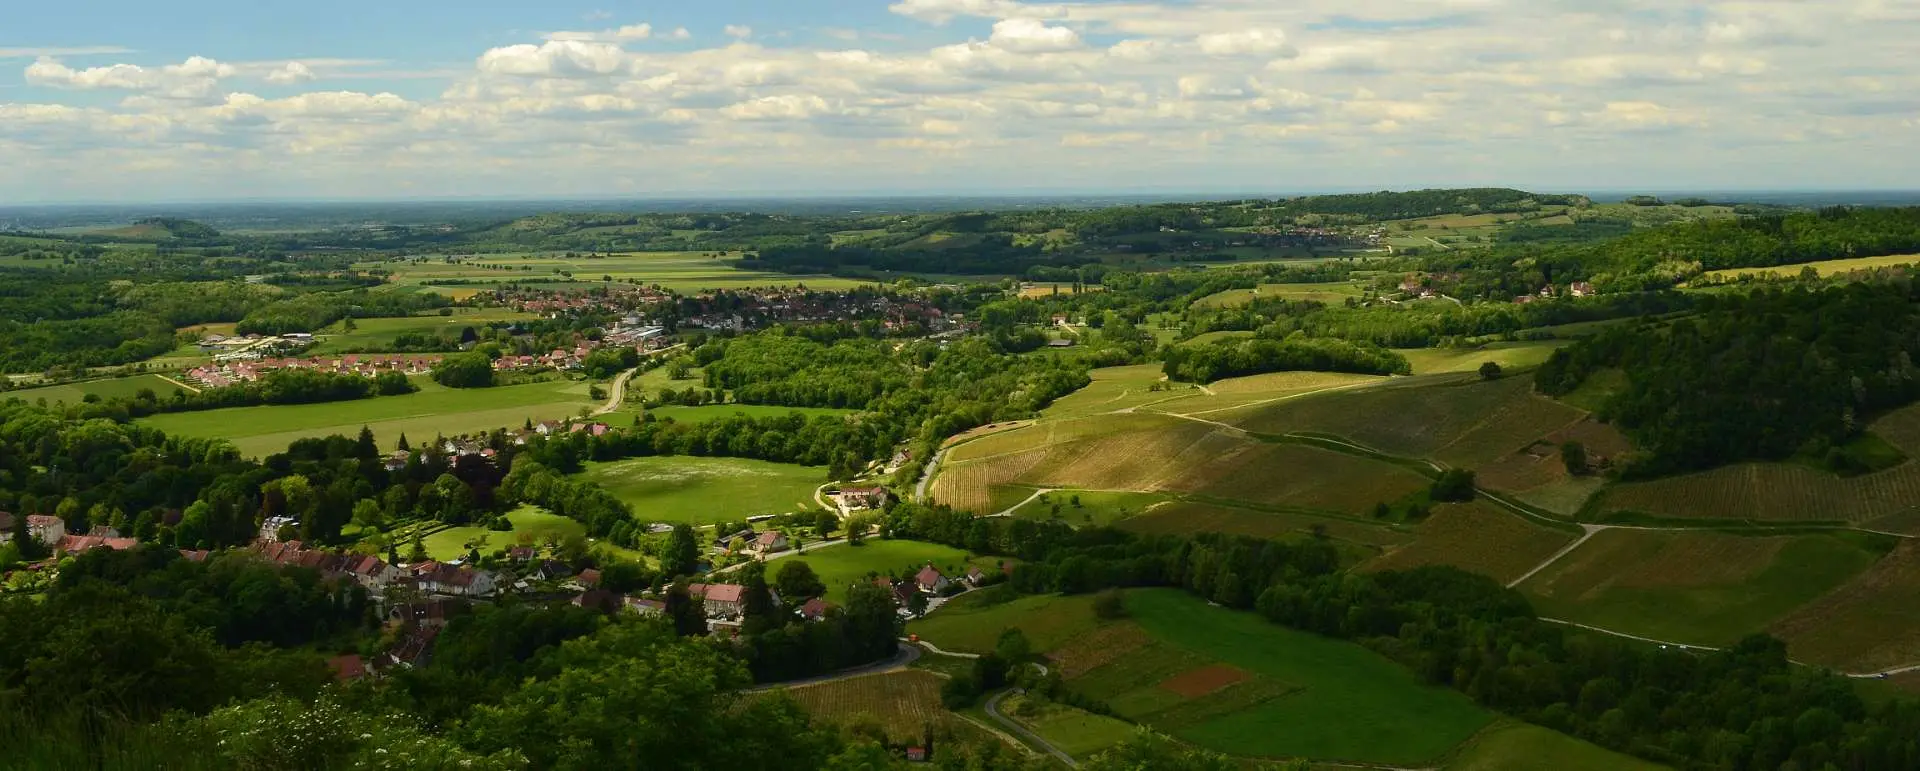 Bourgogne-Franche-Comté - the destination for groups